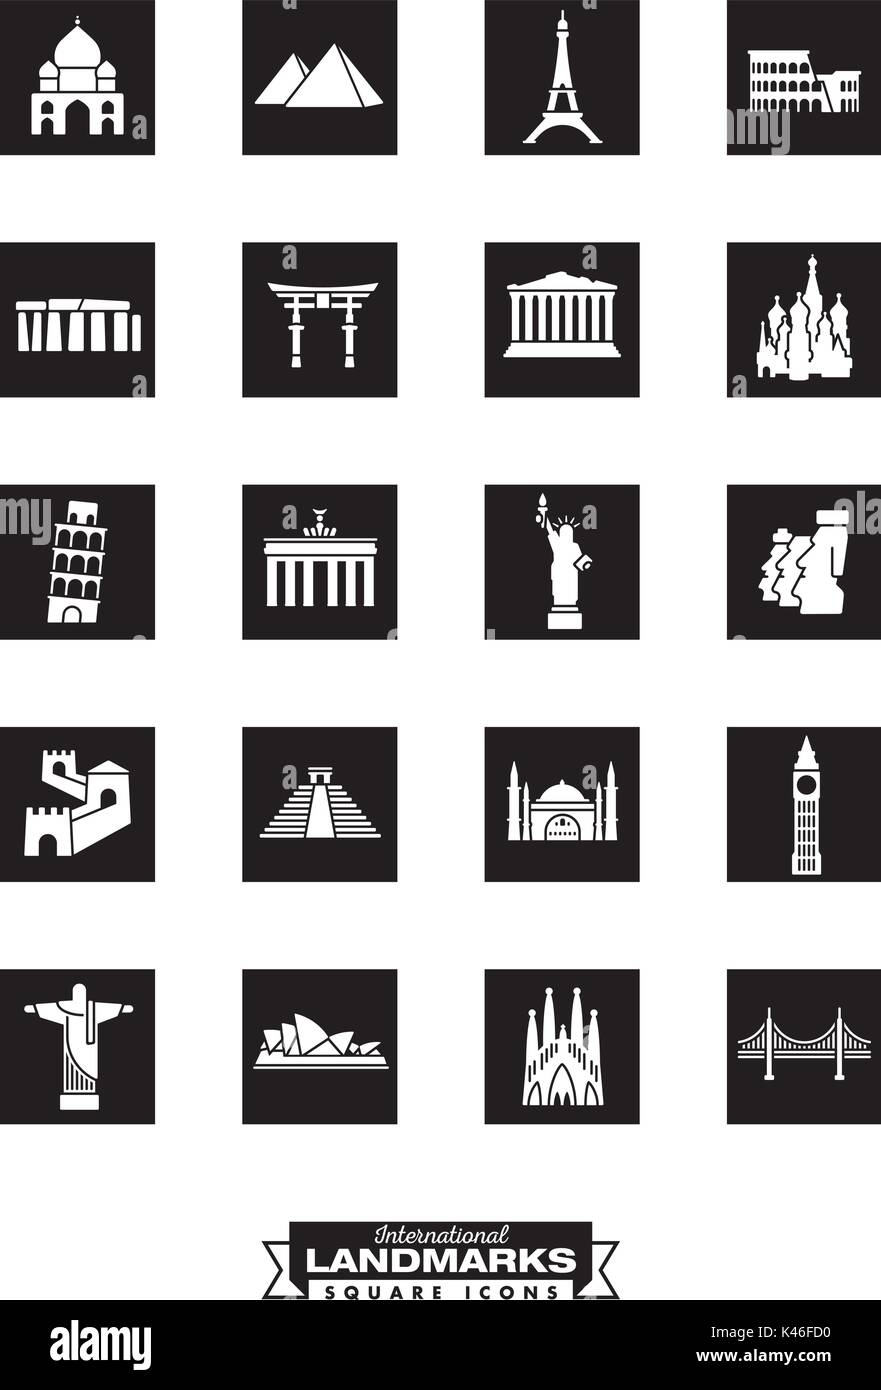 Nero quadrato raccolta di icone dei punti di riferimento internazionali Illustrazione Vettoriale